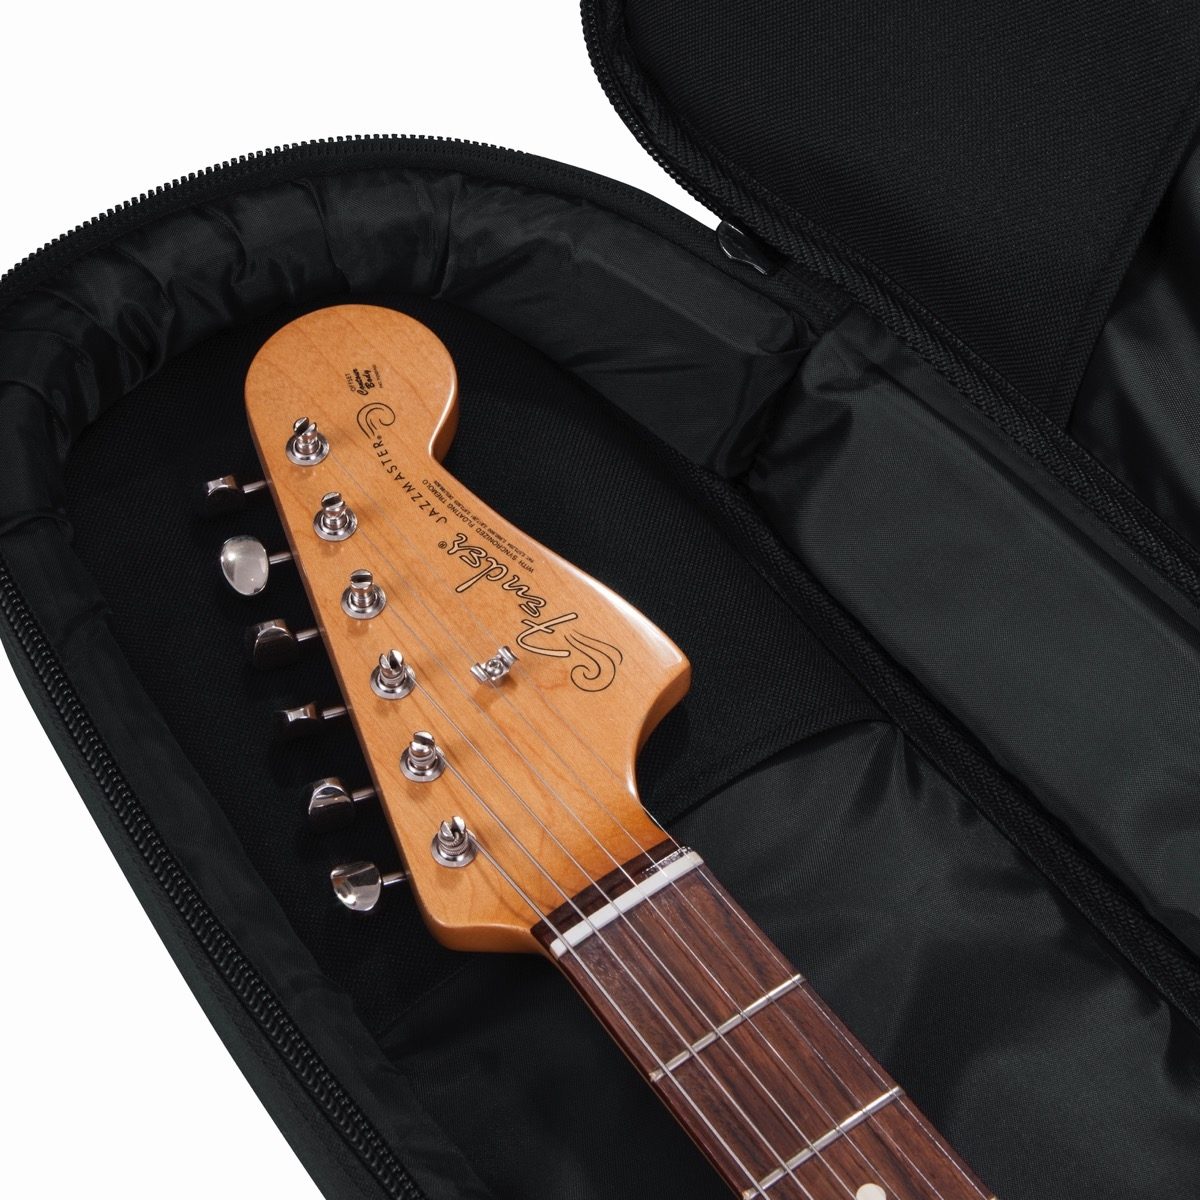 Gator GB-4G-JMASTER Gig bag for Jazzmaster Guitars with Adjustable Backpack Straps